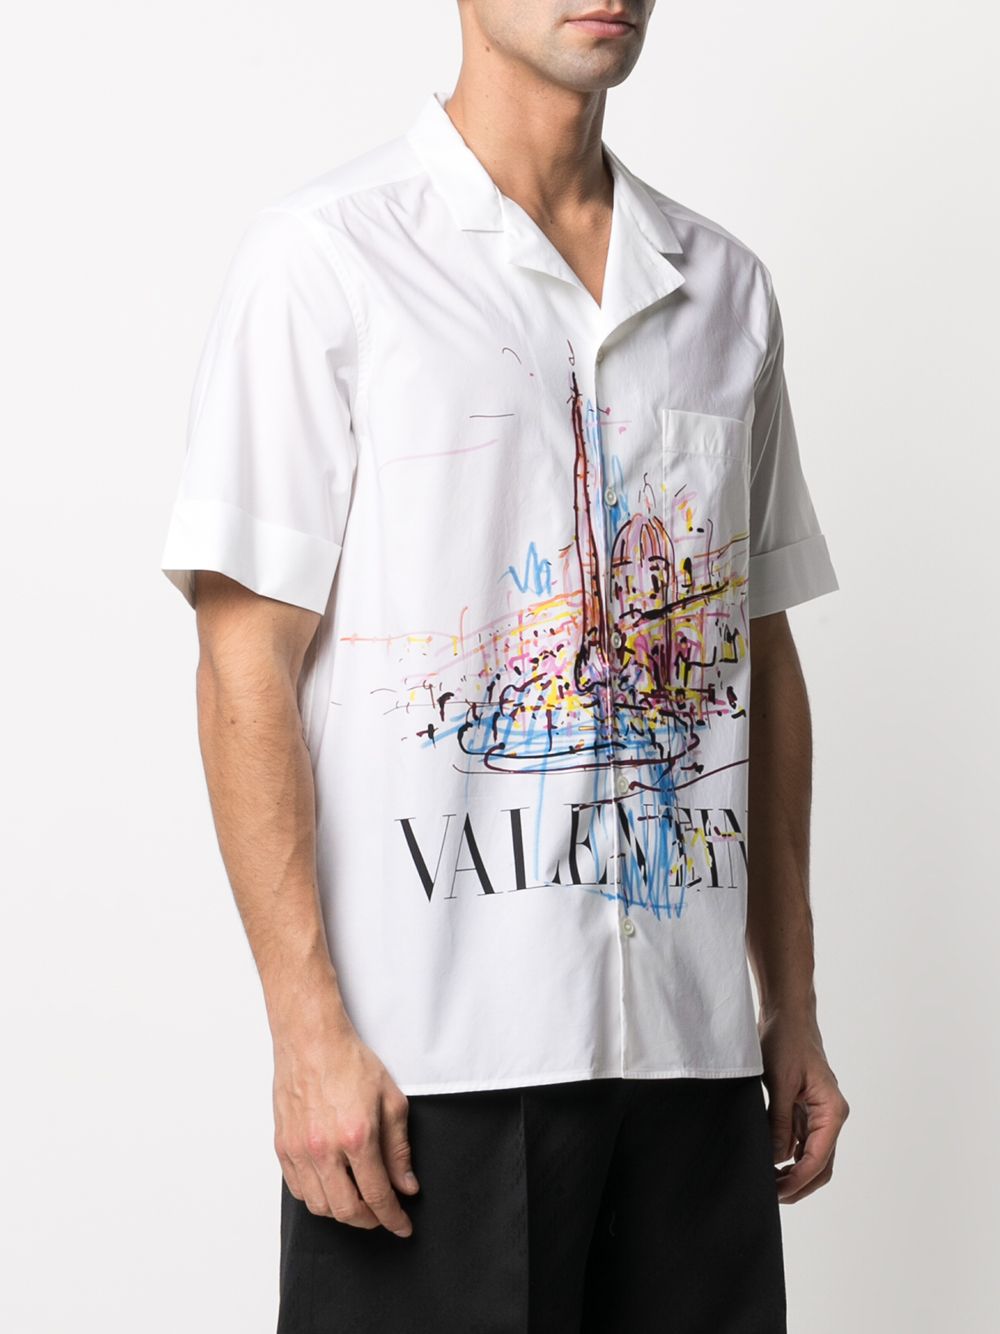 фото Valentino рубашка с принтом